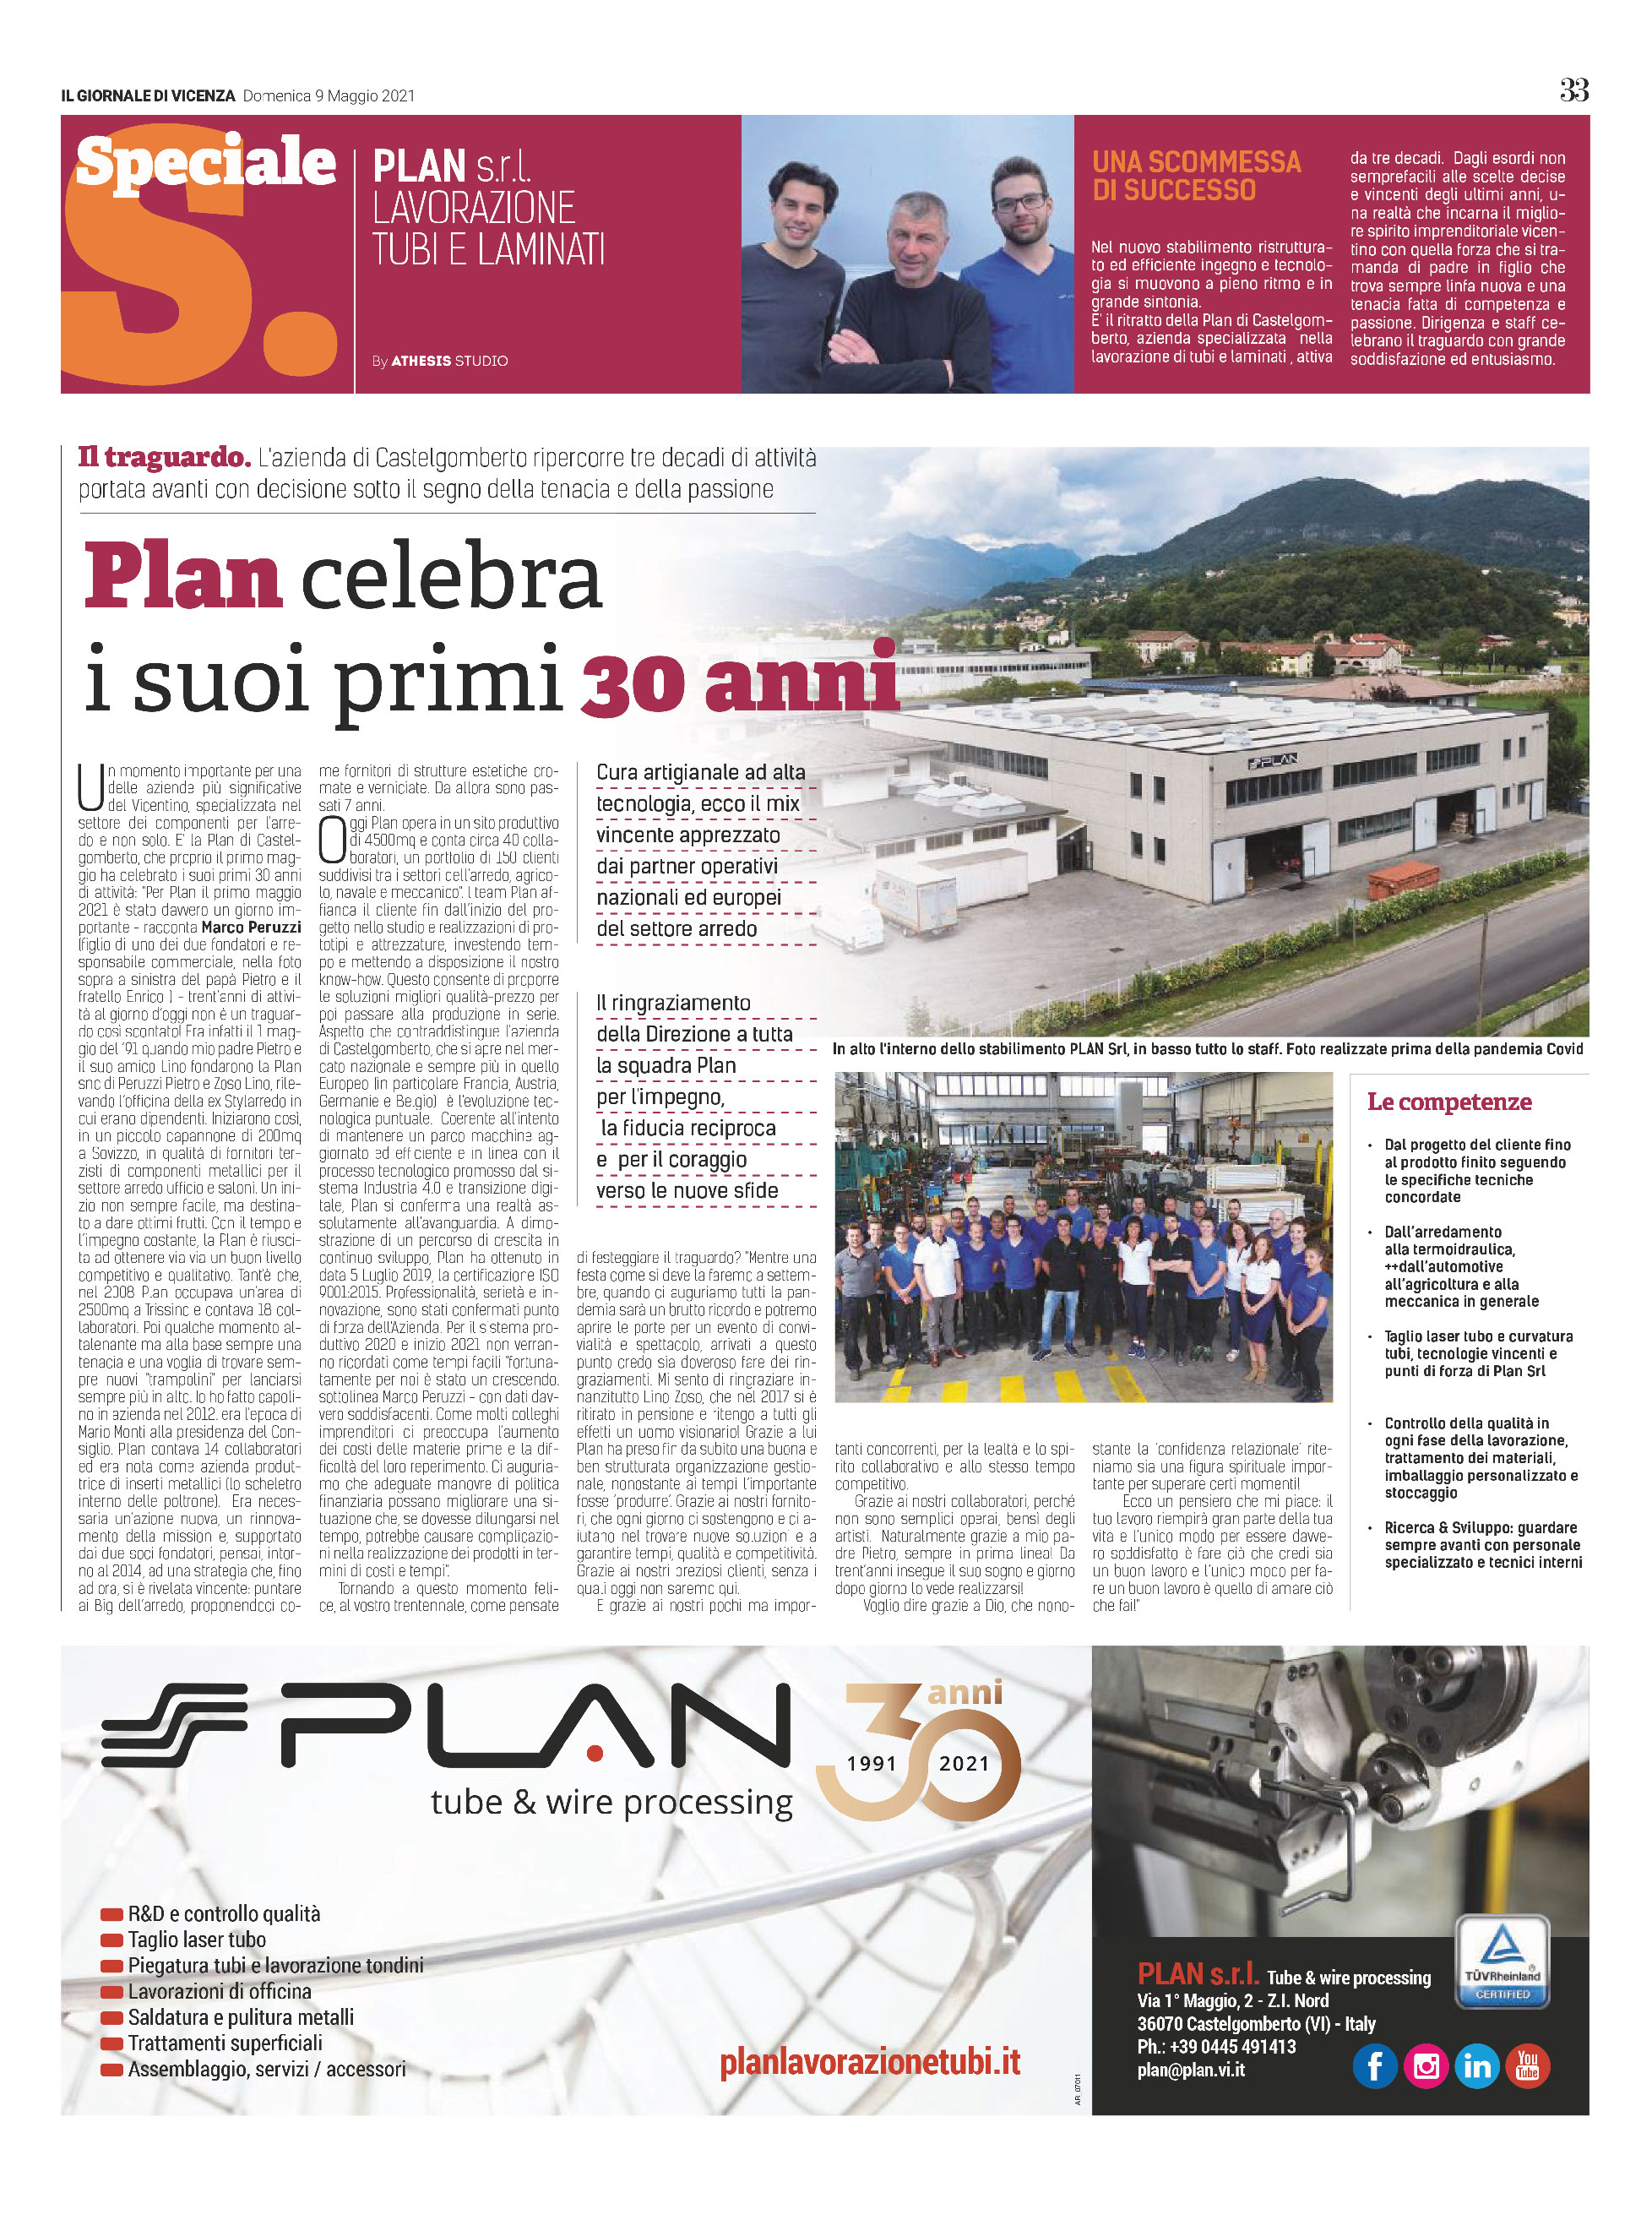 Plan celebra i suoi primi 30 anni 